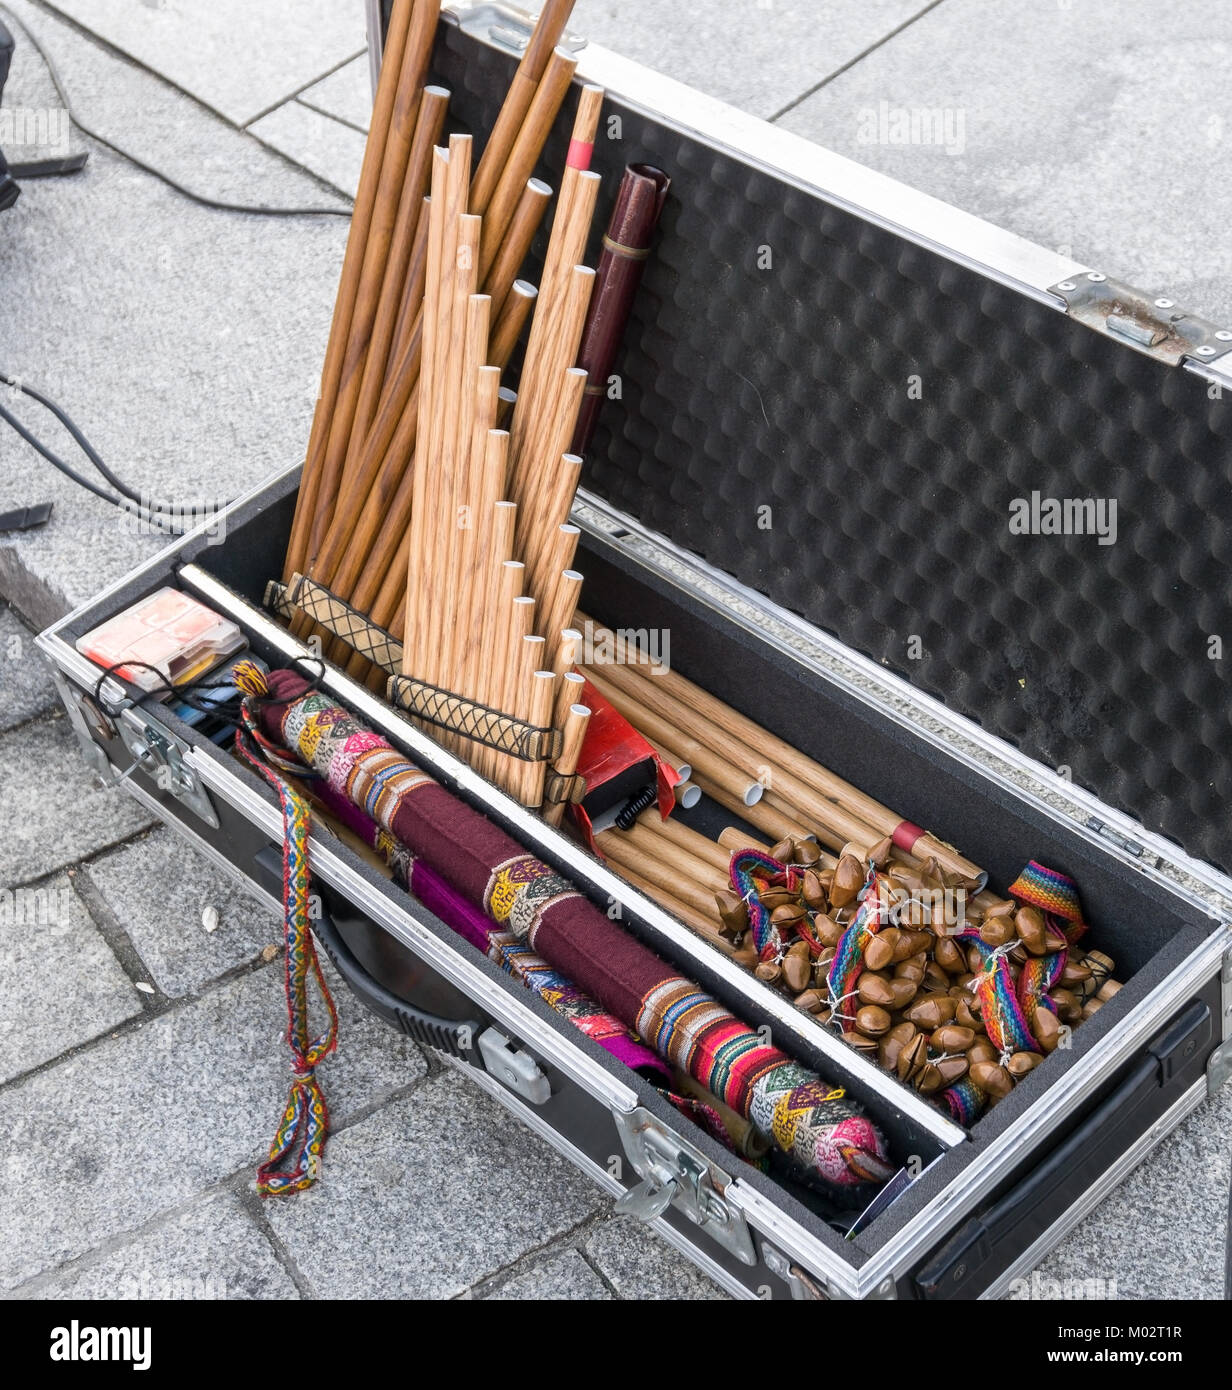 Andengemeinschaft Musikinstrumente im Fall auf der Straße. Panflöten, zampona, siku. Volksmusik. Stockfoto